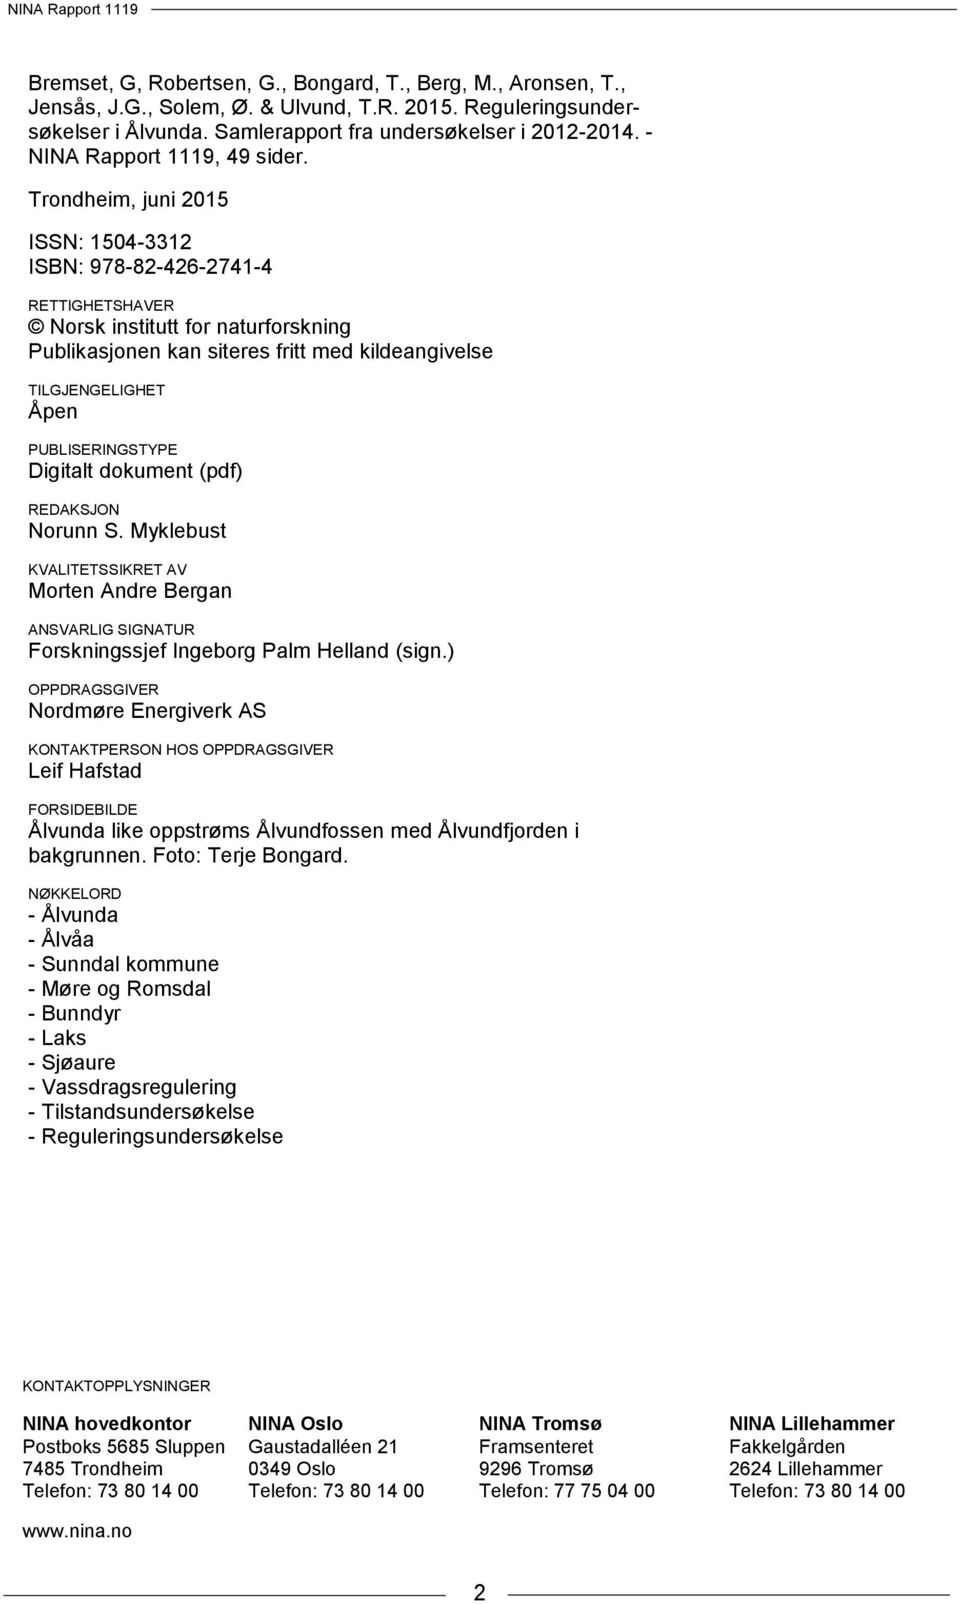 Trondheim, juni 2015 ISSN: 1504-3312 ISBN: 978-82-426-2741-4 RETTIGHETSHAVER Norsk institutt for naturforskning Publikasjonen kan siteres fritt med kildeangivelse TILGJENGELIGHET Åpen